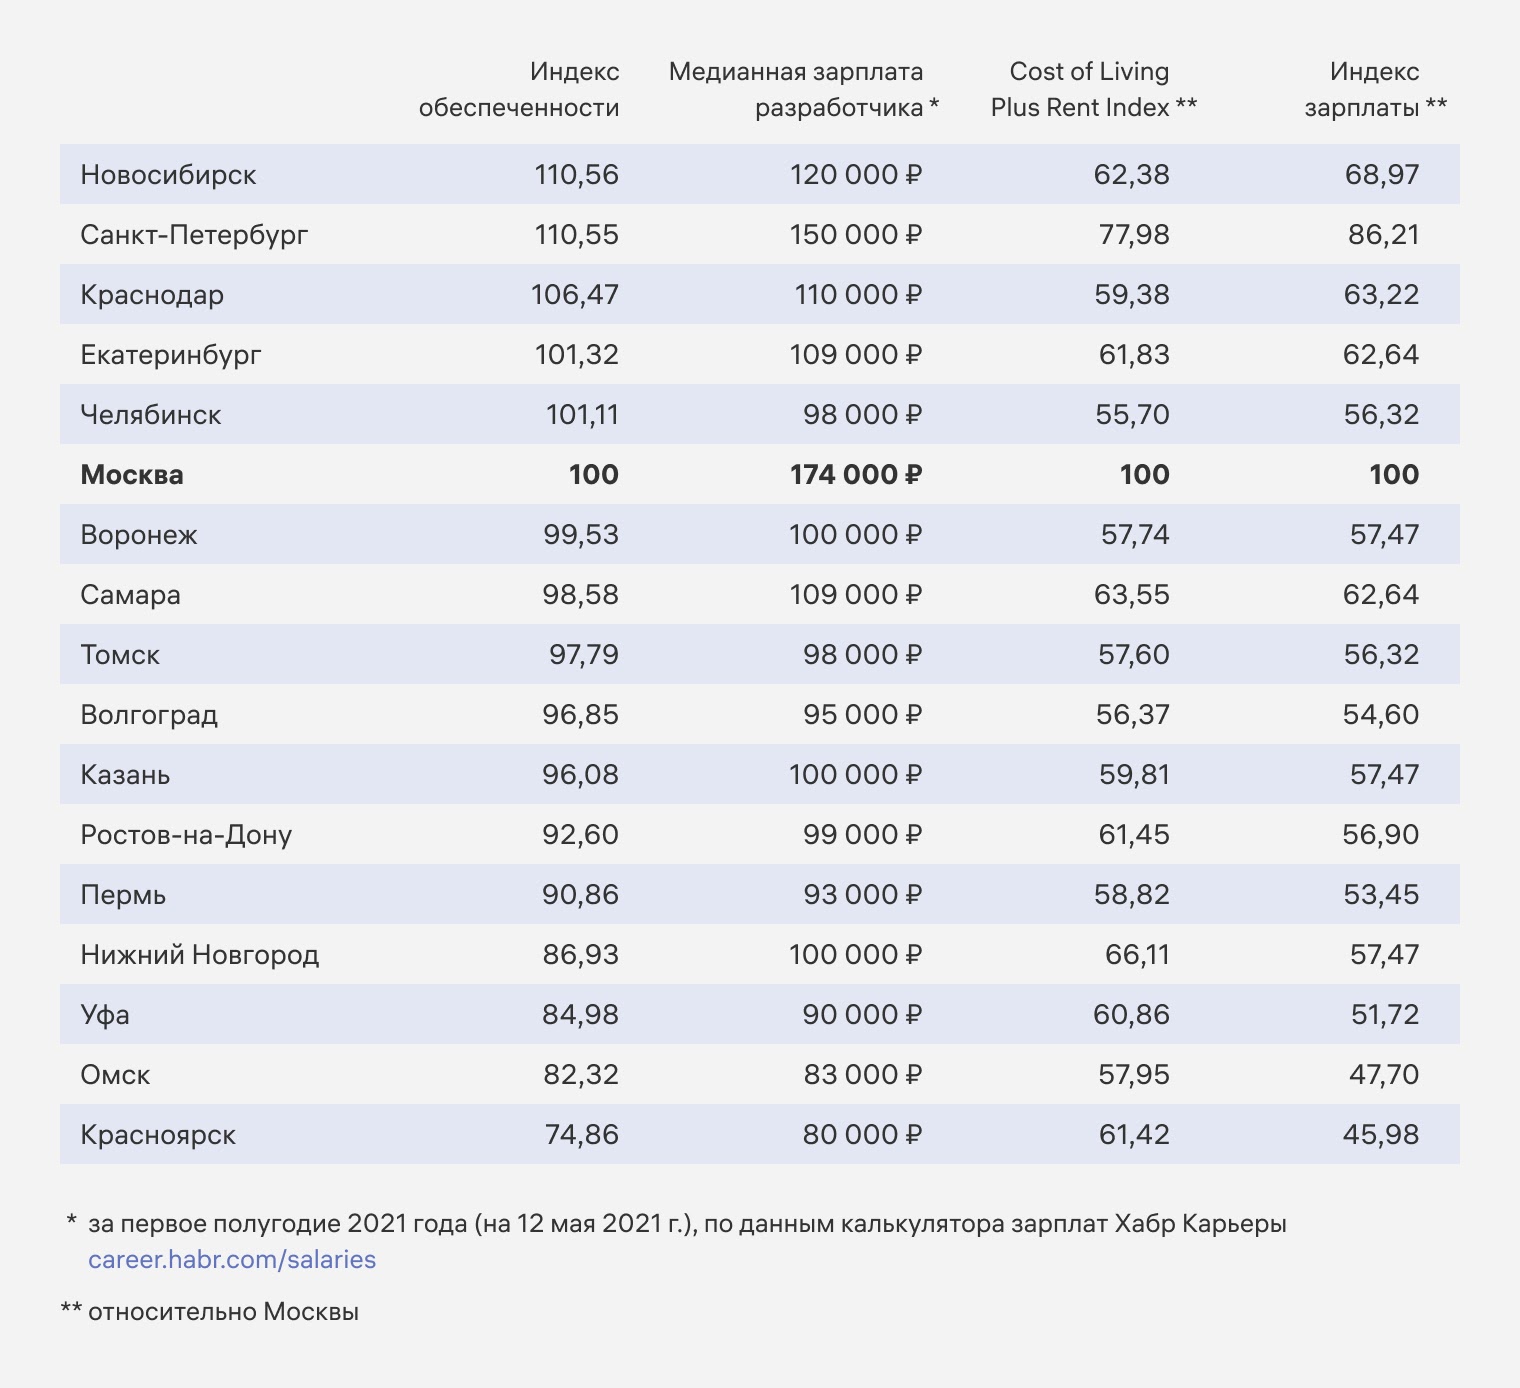 Индекс обеспеченности разработчикрв в российских городах